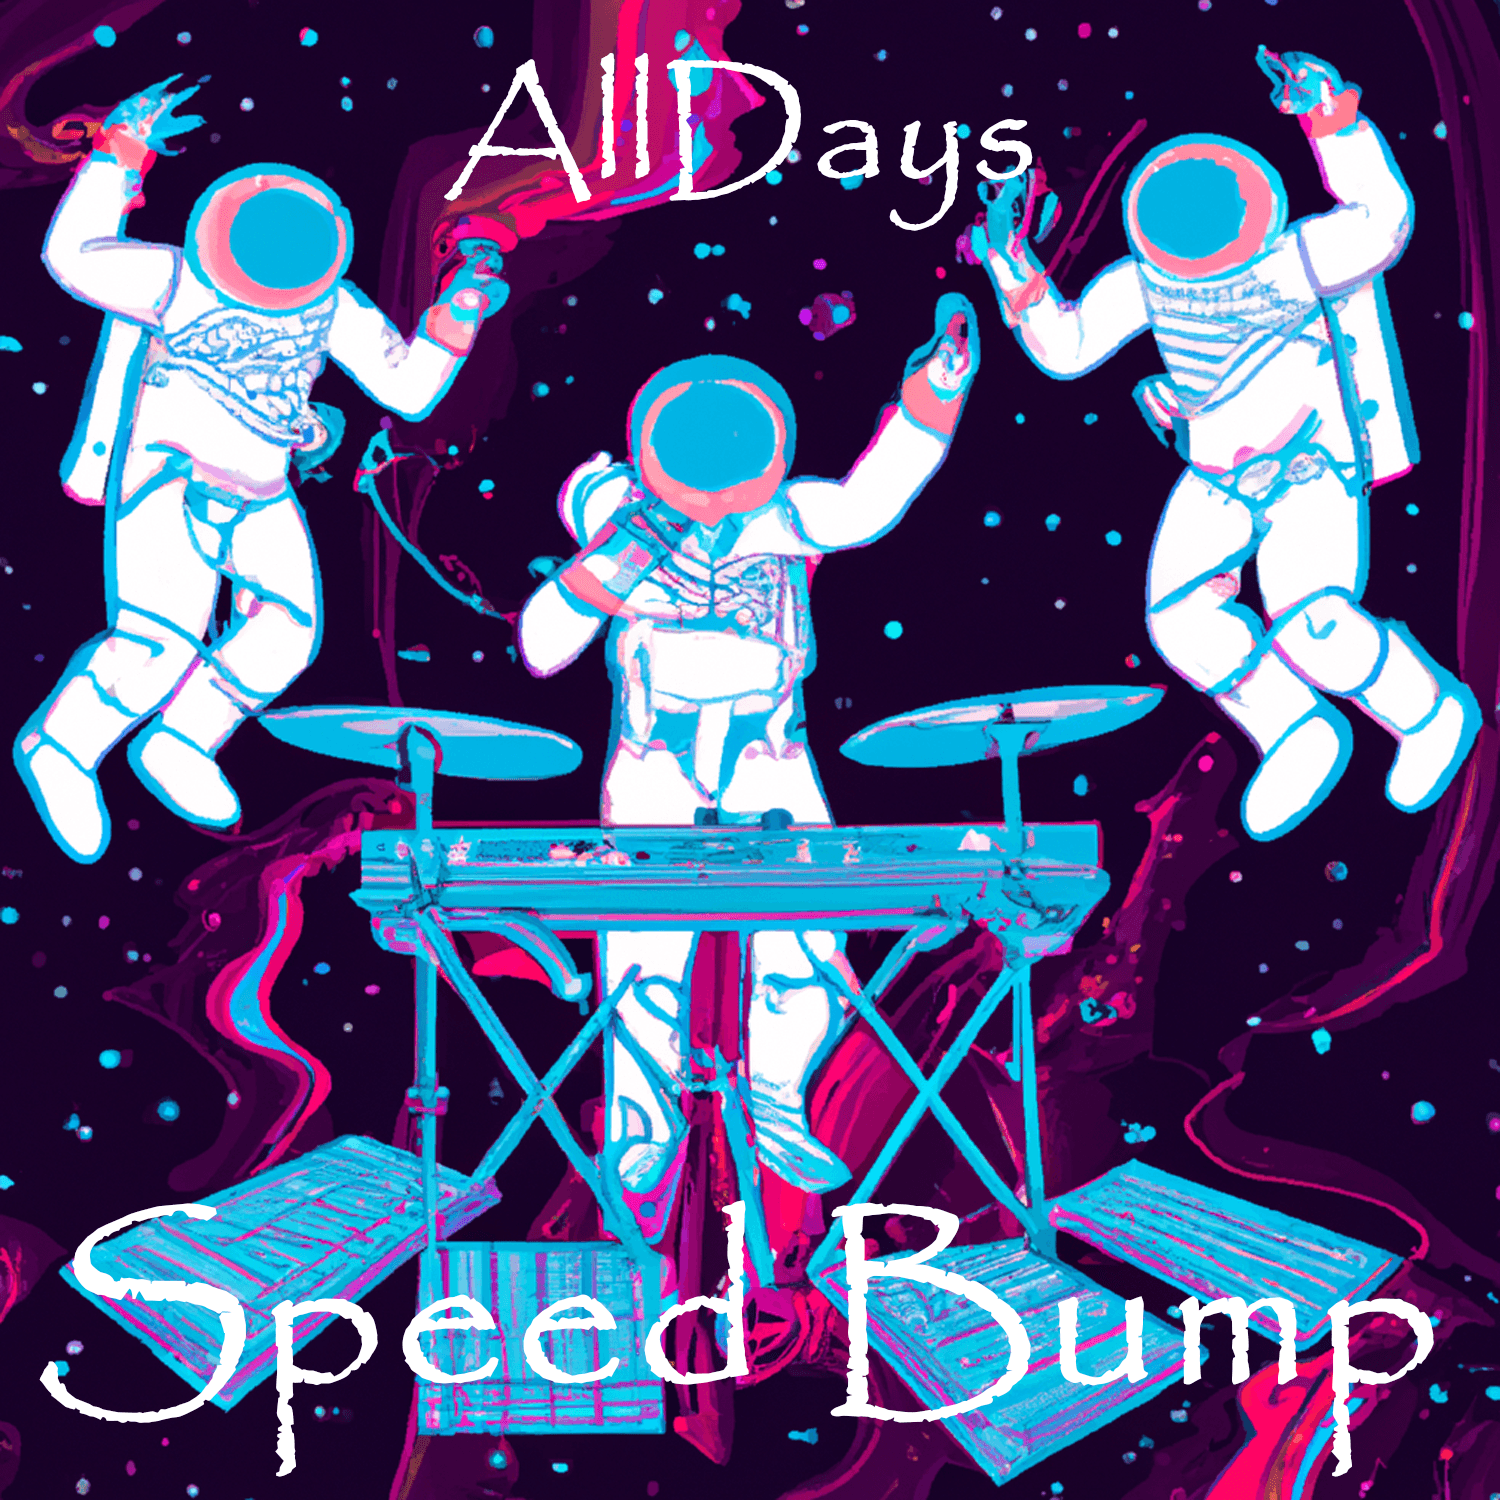 AllDays "Speed Bump" Full Song NFT 4/12